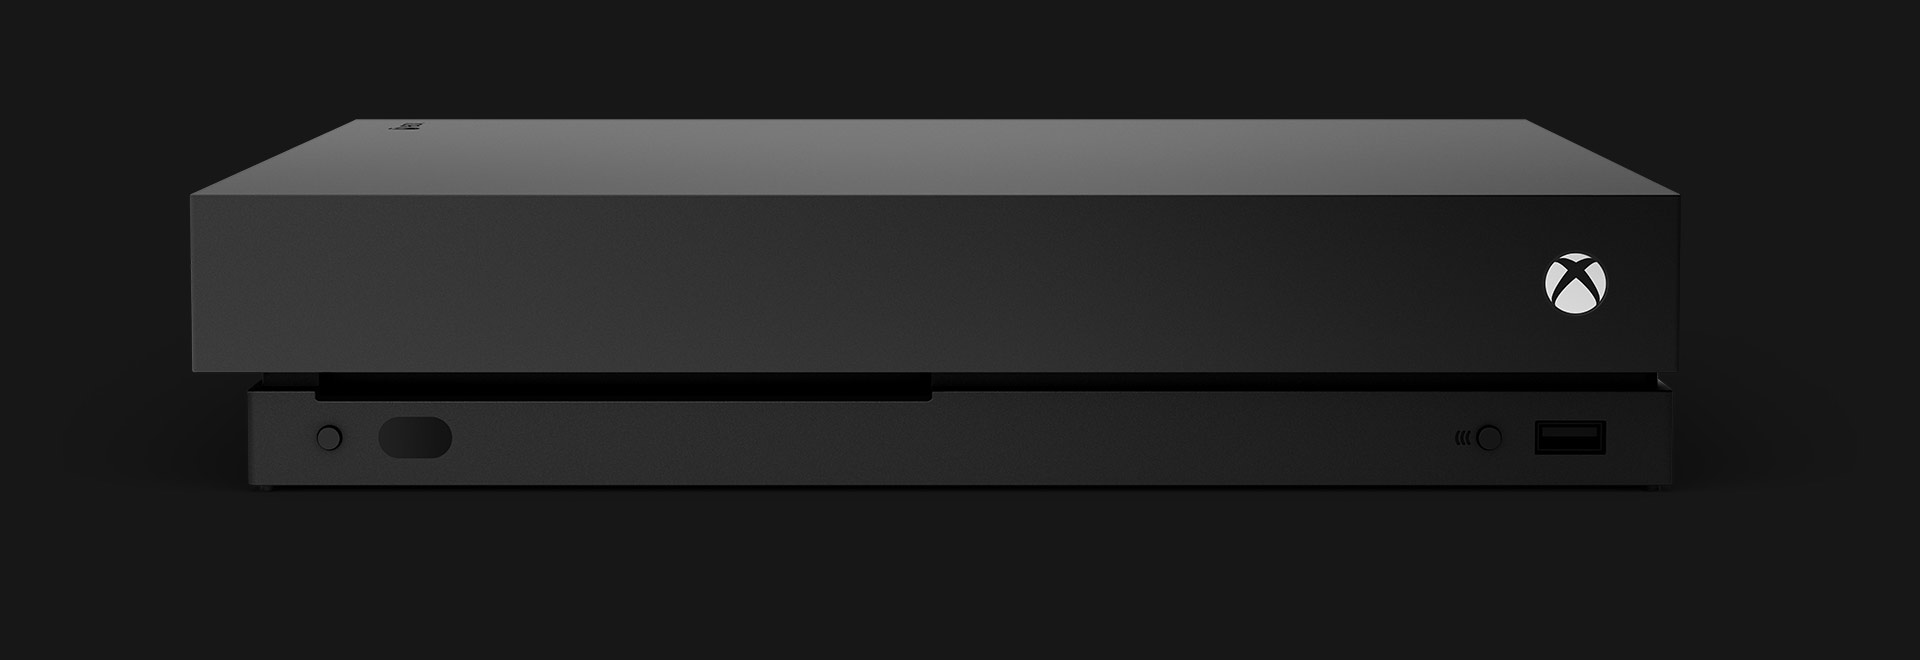 Vista anteriore di una console Xbox One X.